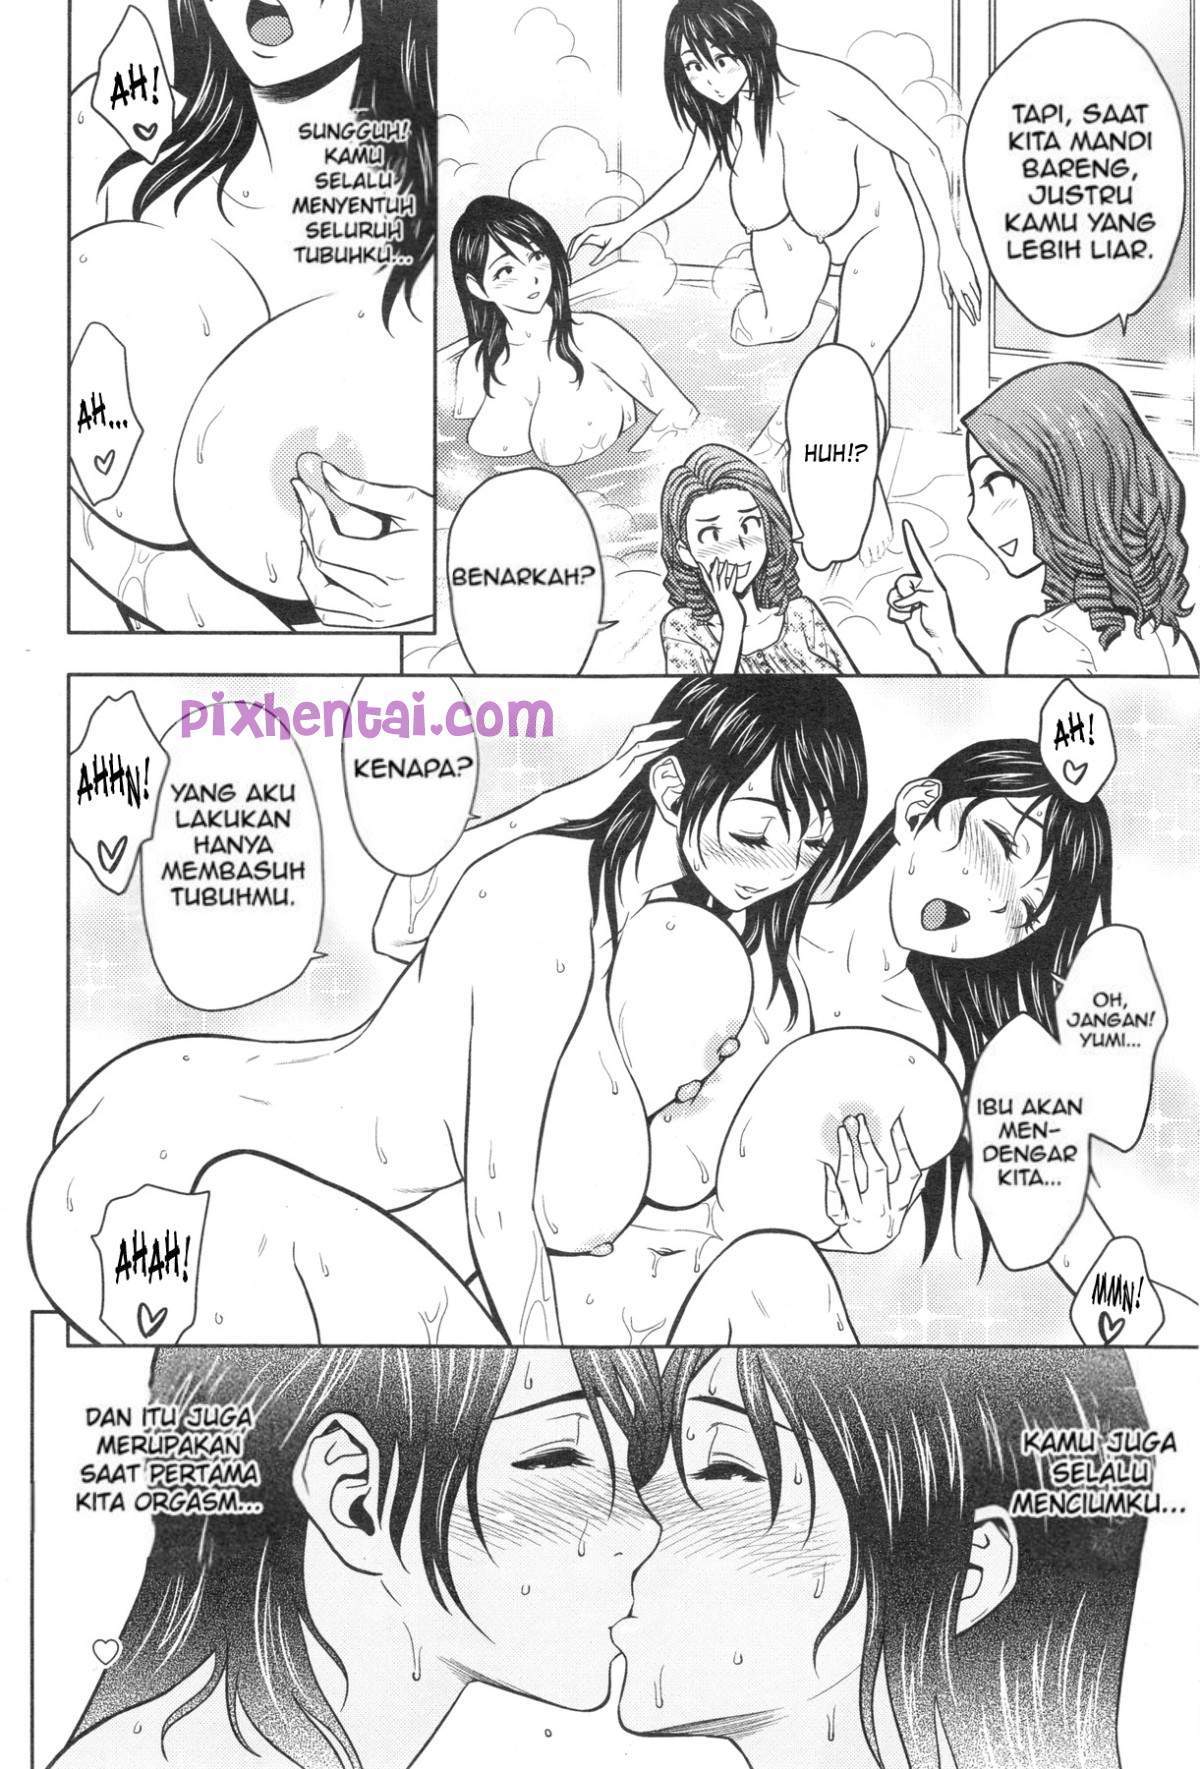 Komik hentai xxx manga sex bokep bercinta dengan saudara kembar 04